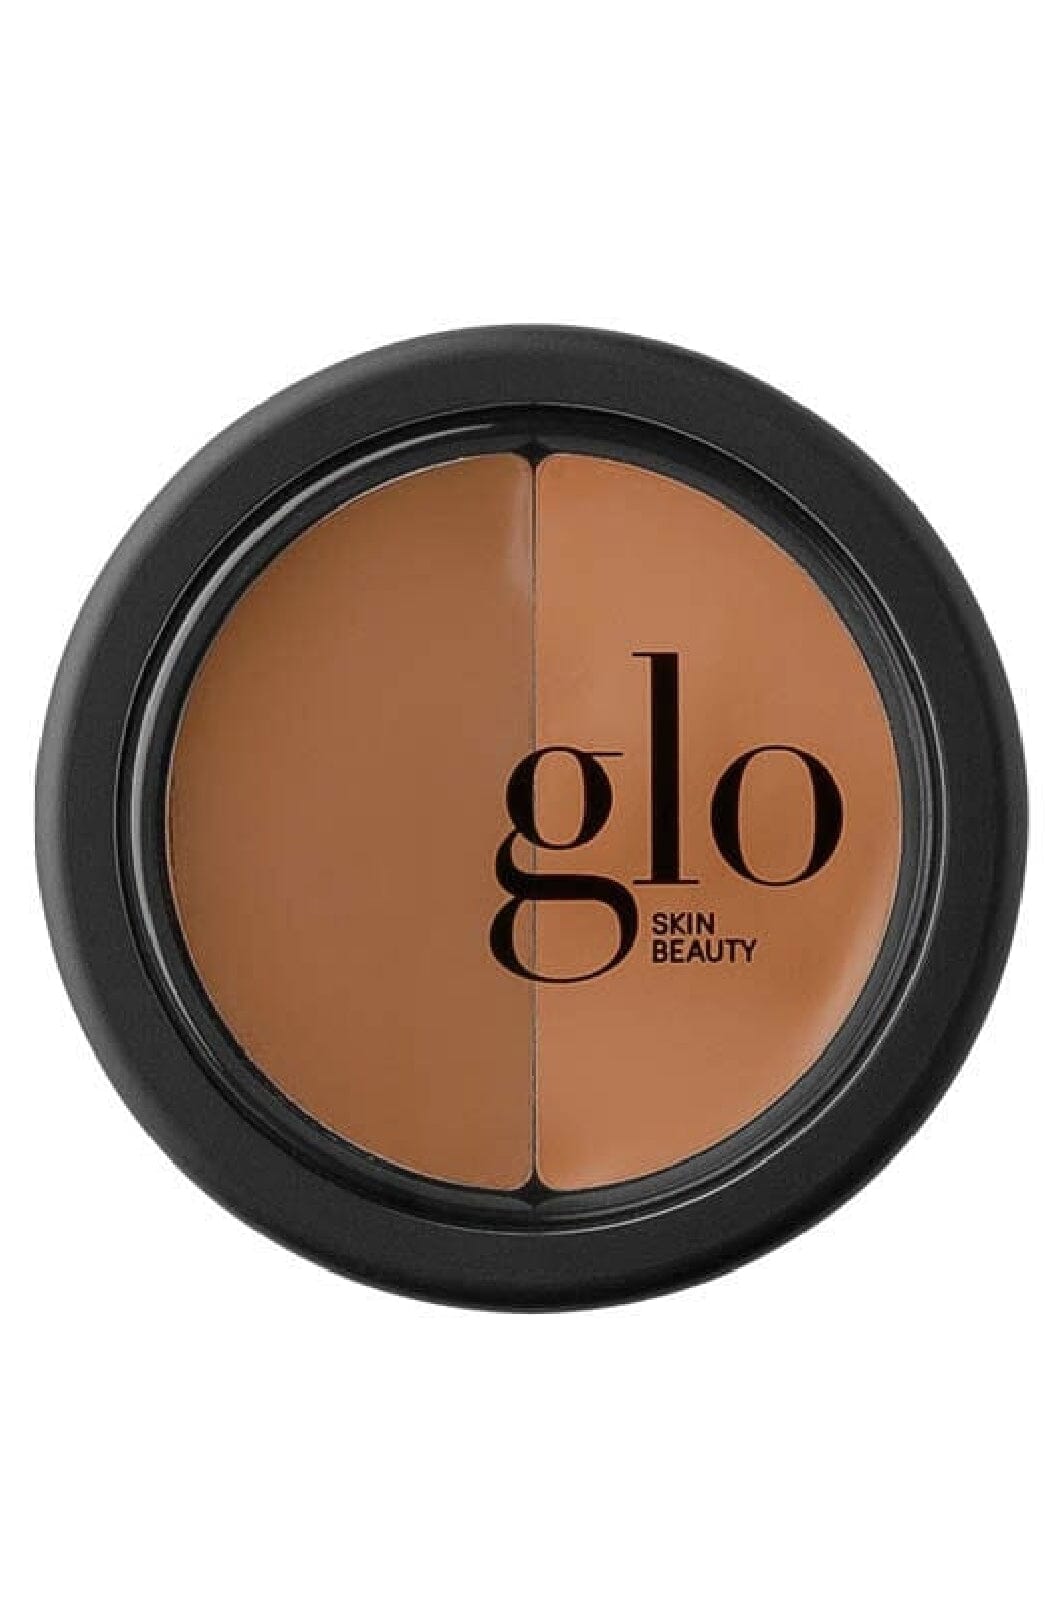 Glo Skin Beauty - Glo Under Eye Concealer - Honey, 3,1 g Concealer 